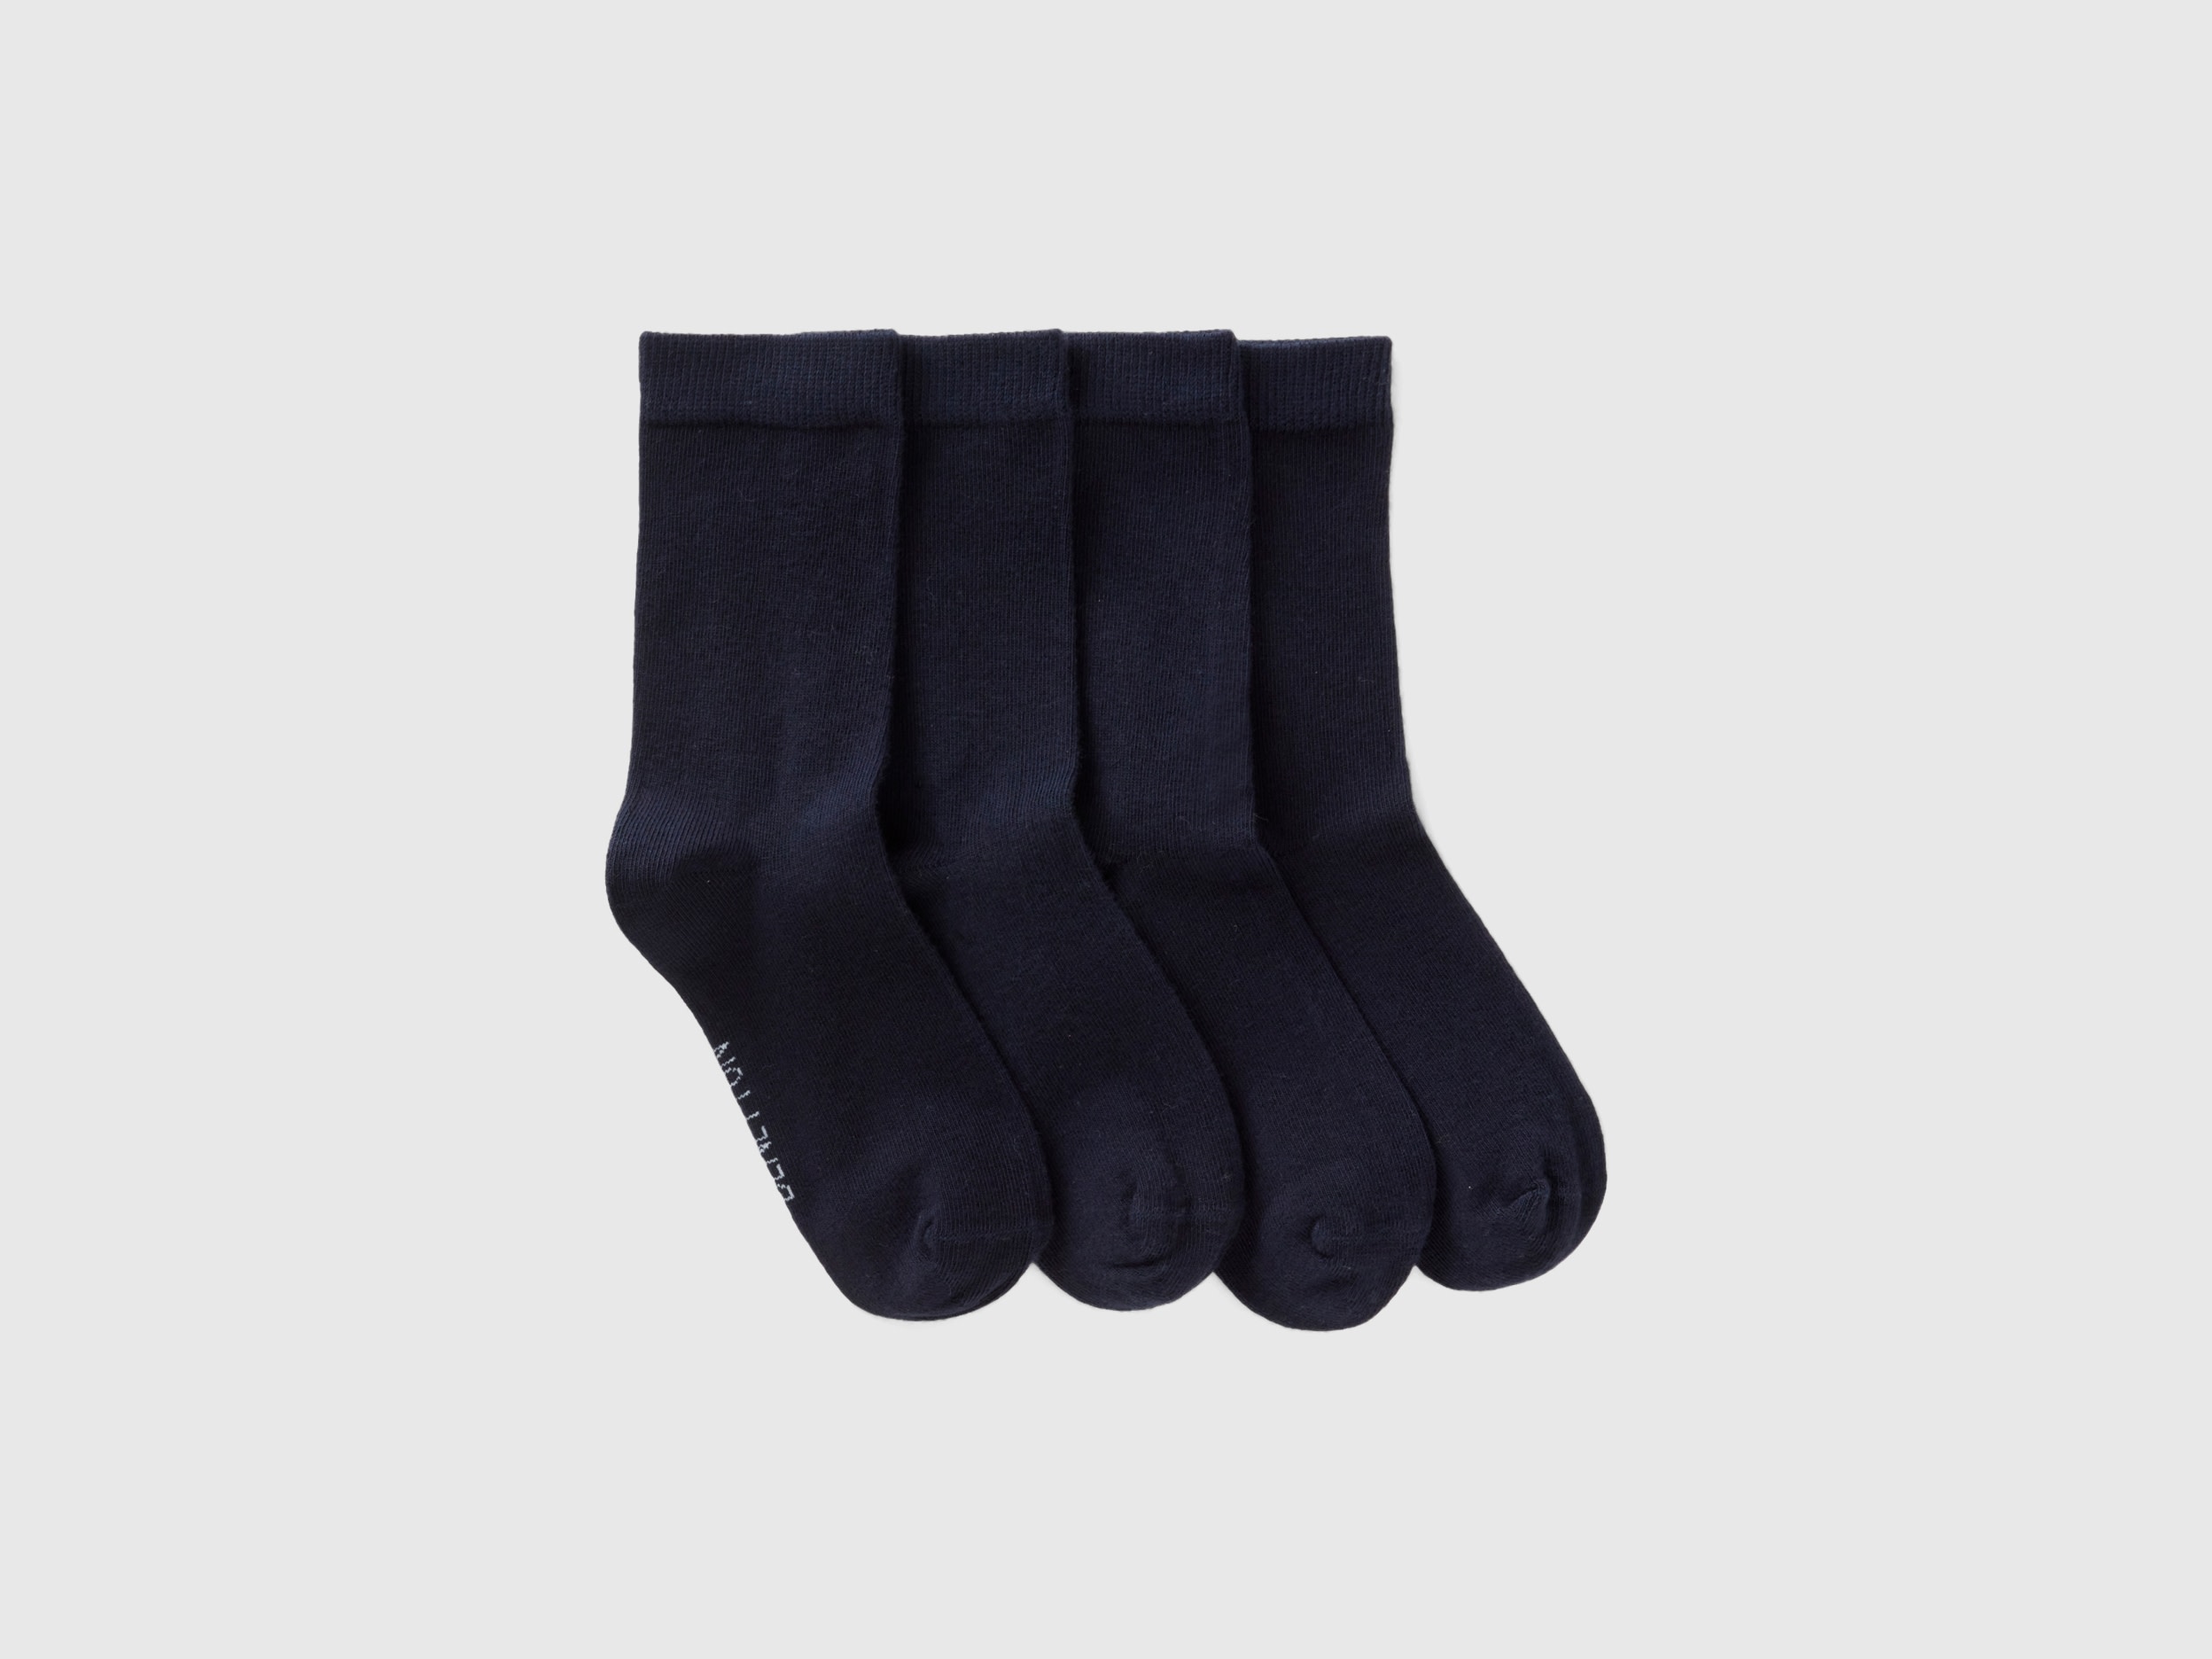 Benetton, Short Sock Set, size 3-4, Black, Kids